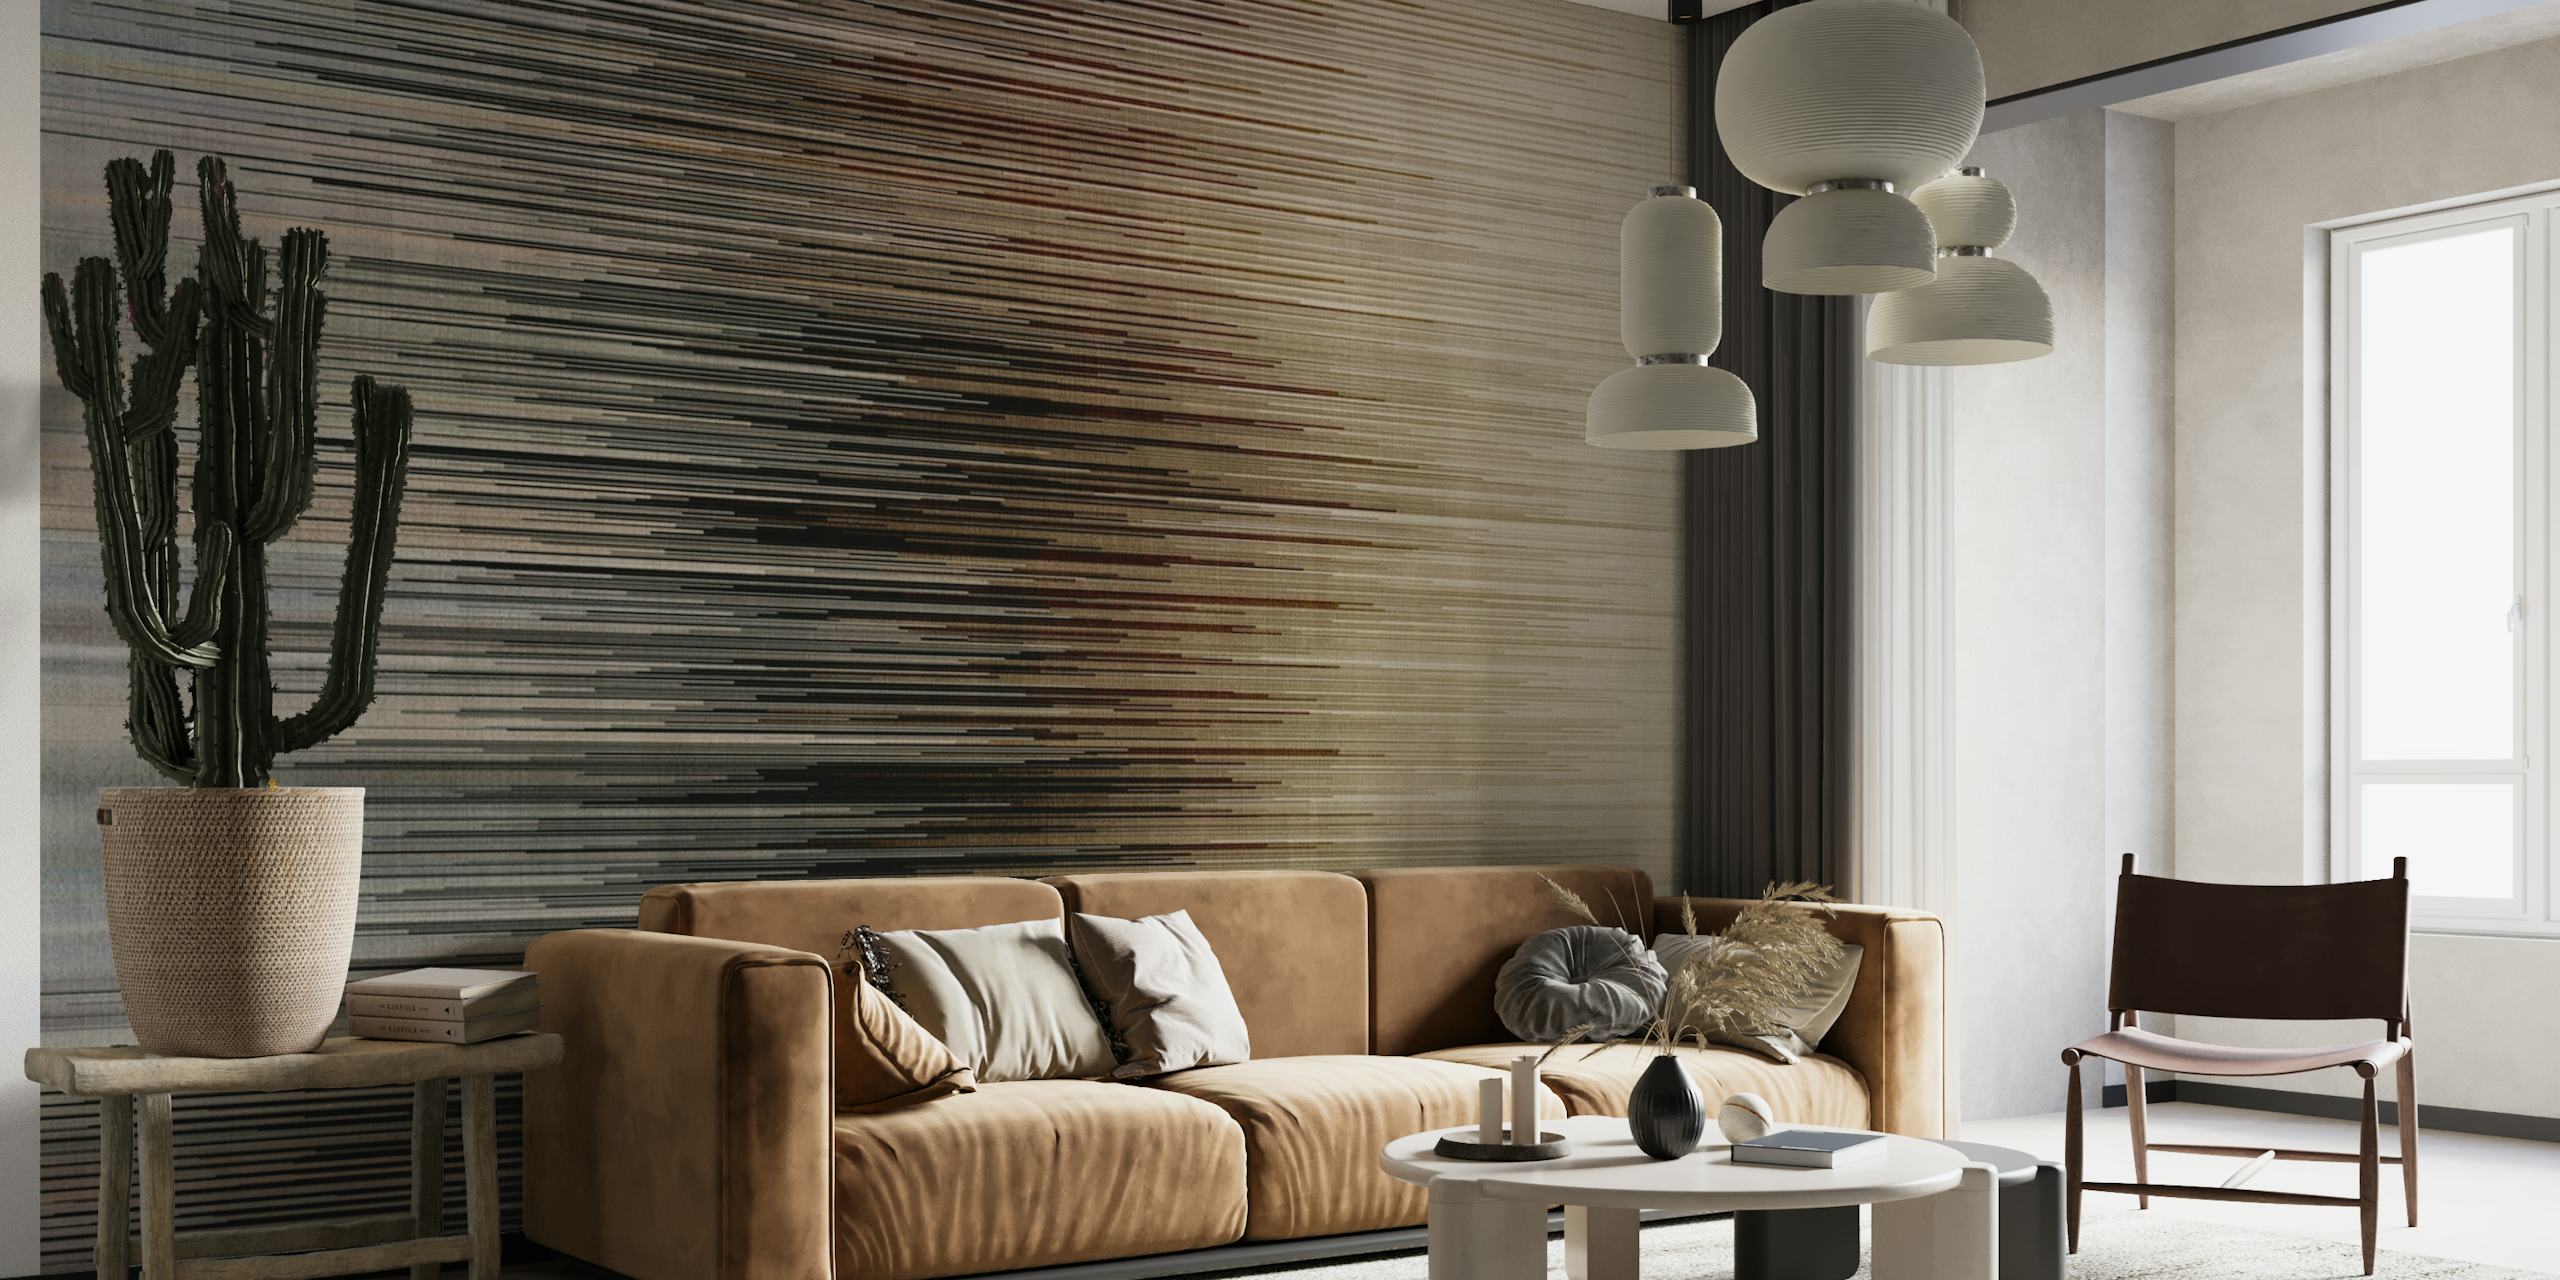 Fotomural vinílico de parede com padrão de linhas abstratas com linhas finas borradas e tons neutros criando textura.